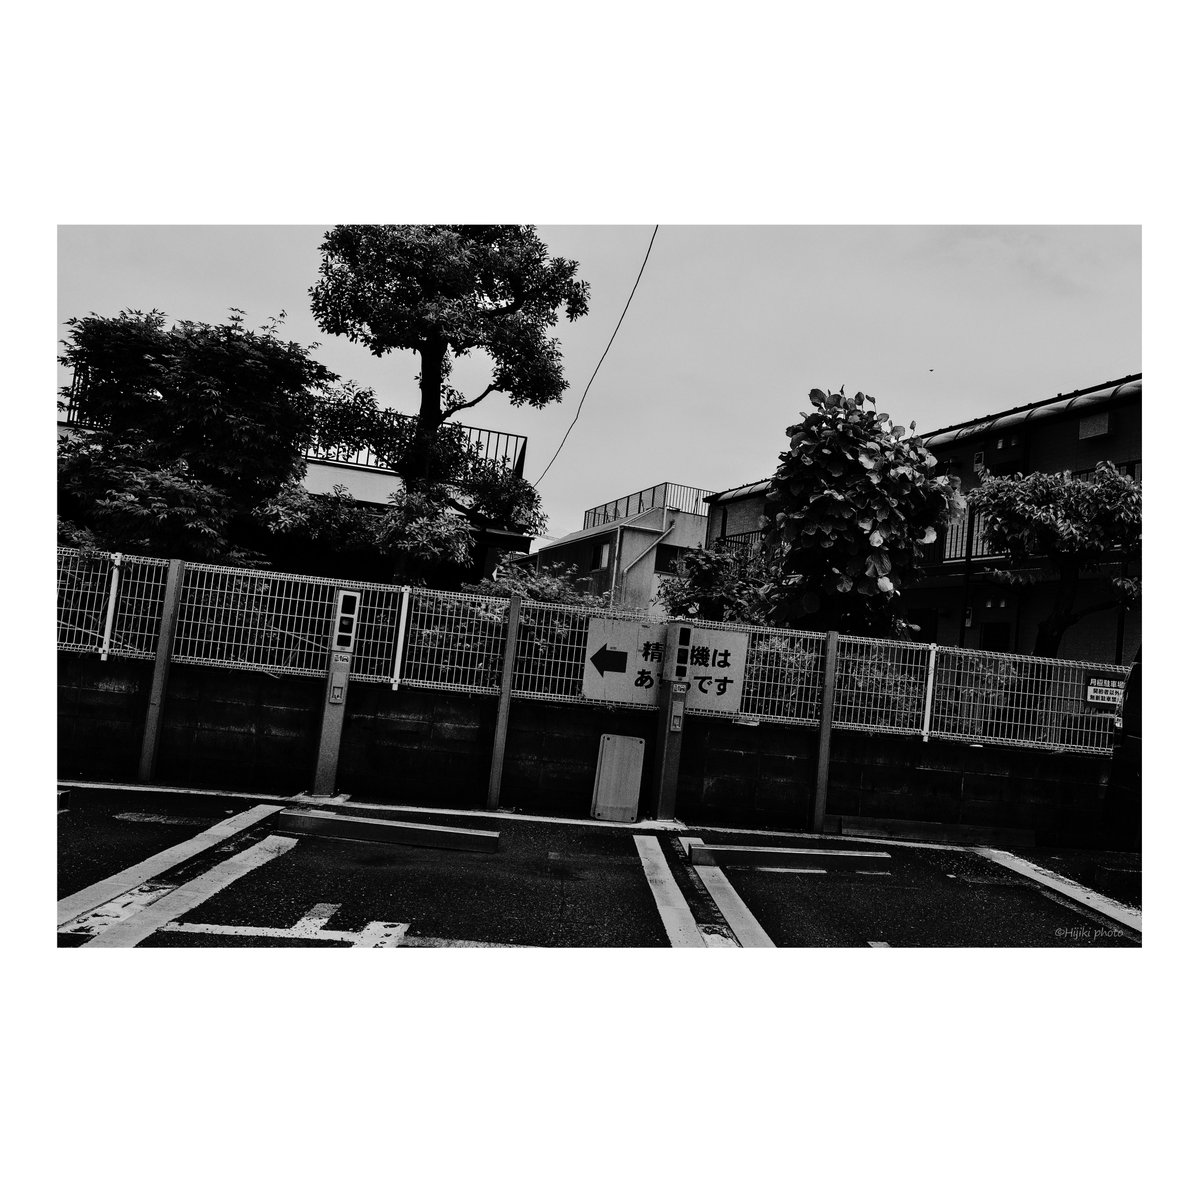 営み                                                                               

#ストリートスナップ #東京 #Tokyo #Japan #snapshot #BlackandWhite #bnwphotography #bnw #streetshots #monochrome #fineartphotography #streetphotography #blackandwhitephotography